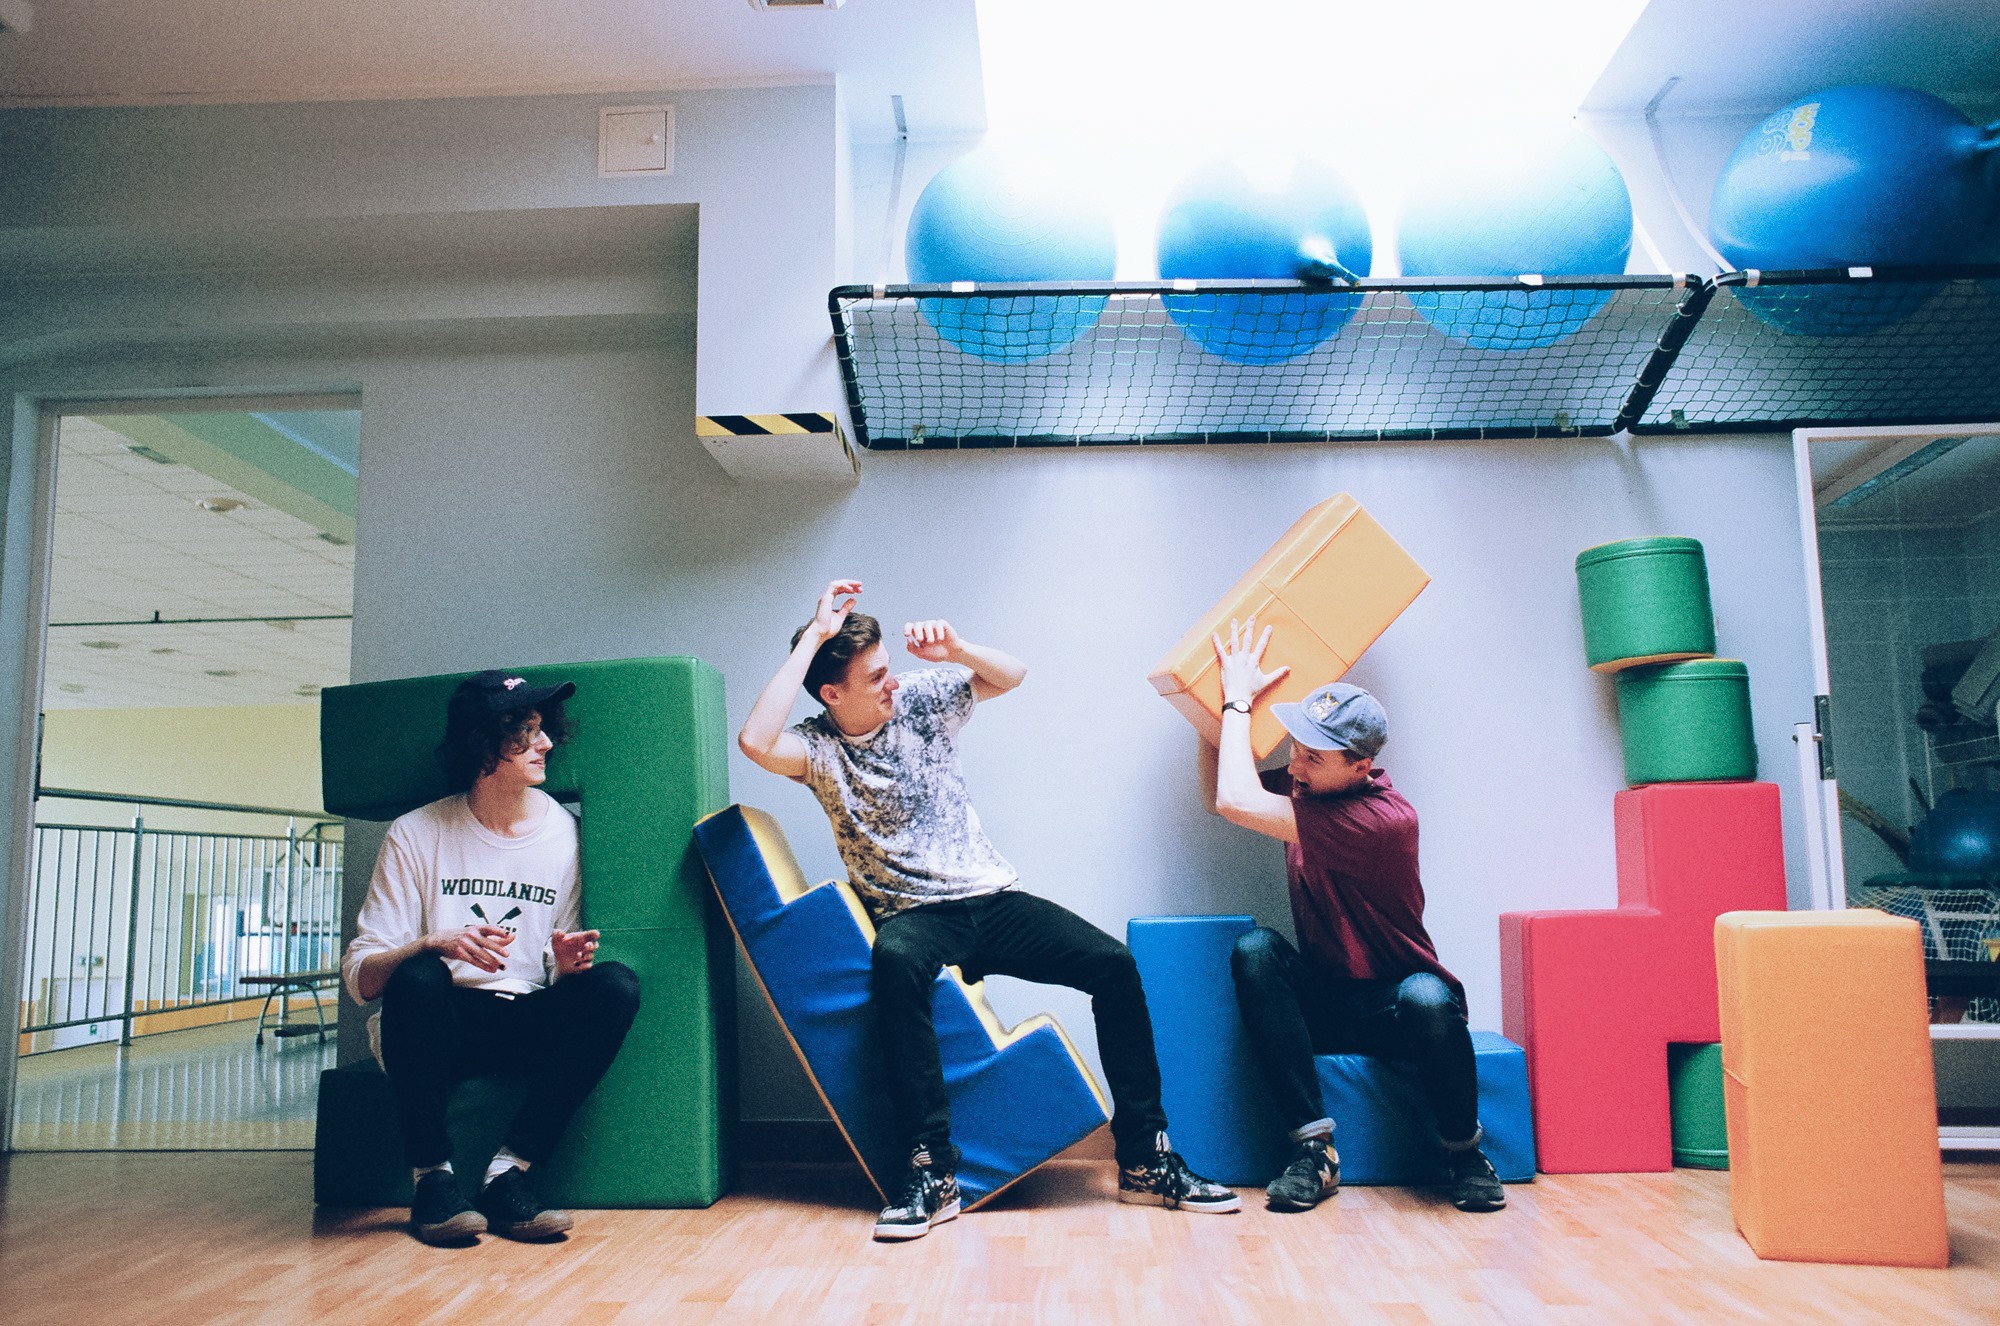 Trzech chłopakow w pokoju zabaw rzucaja sie kolorowymi kwadratami